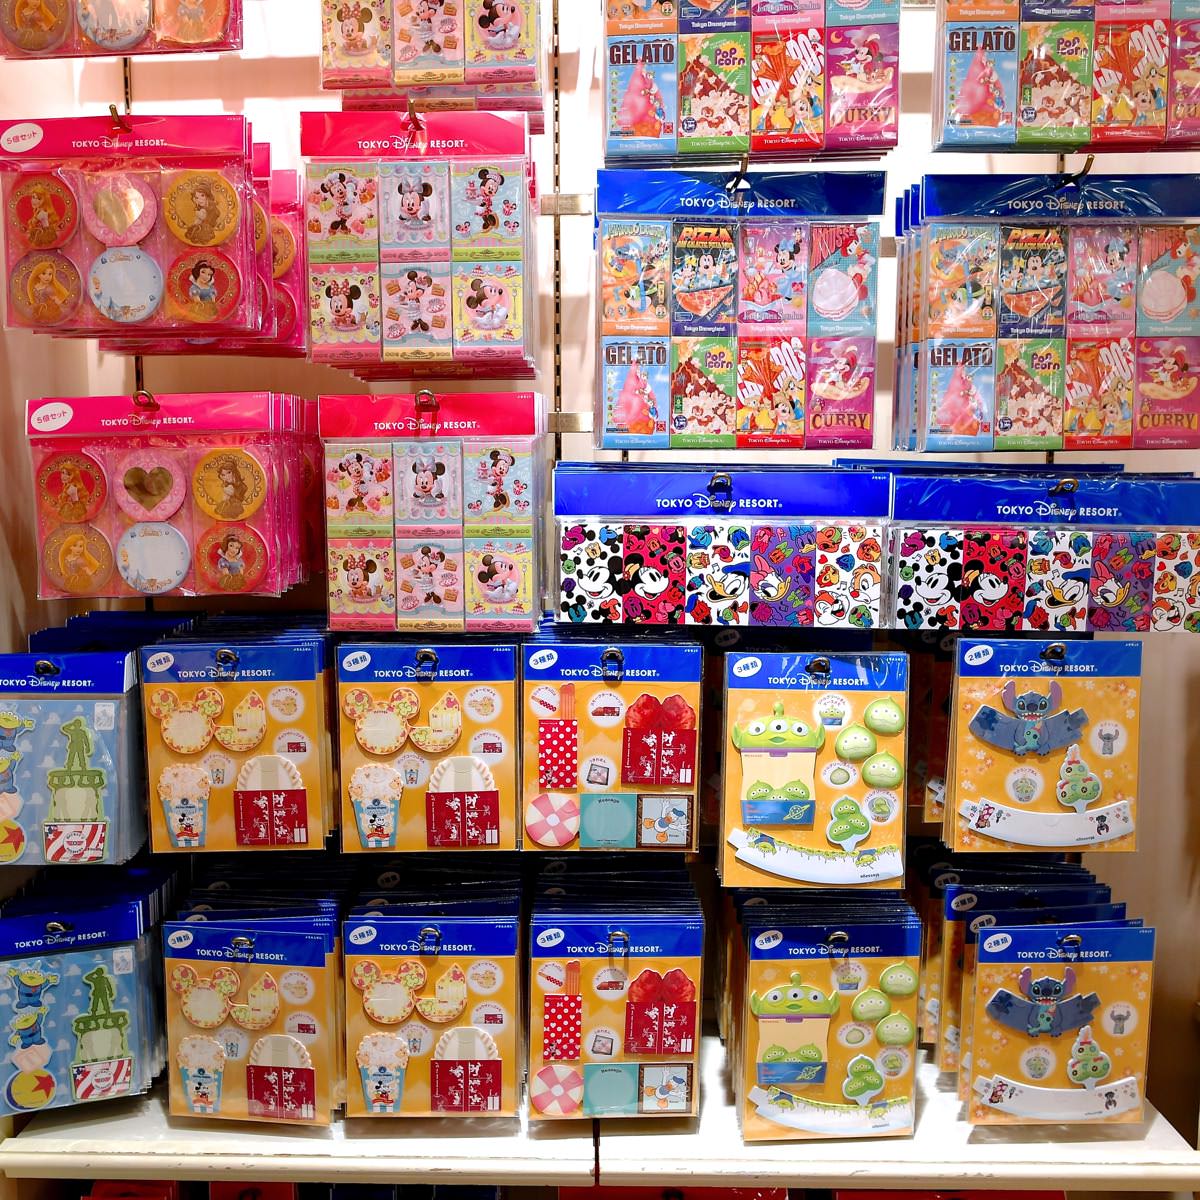 折り紙メモも盛りだくさん 東京ディズニーランド16秋冬メモまとめ